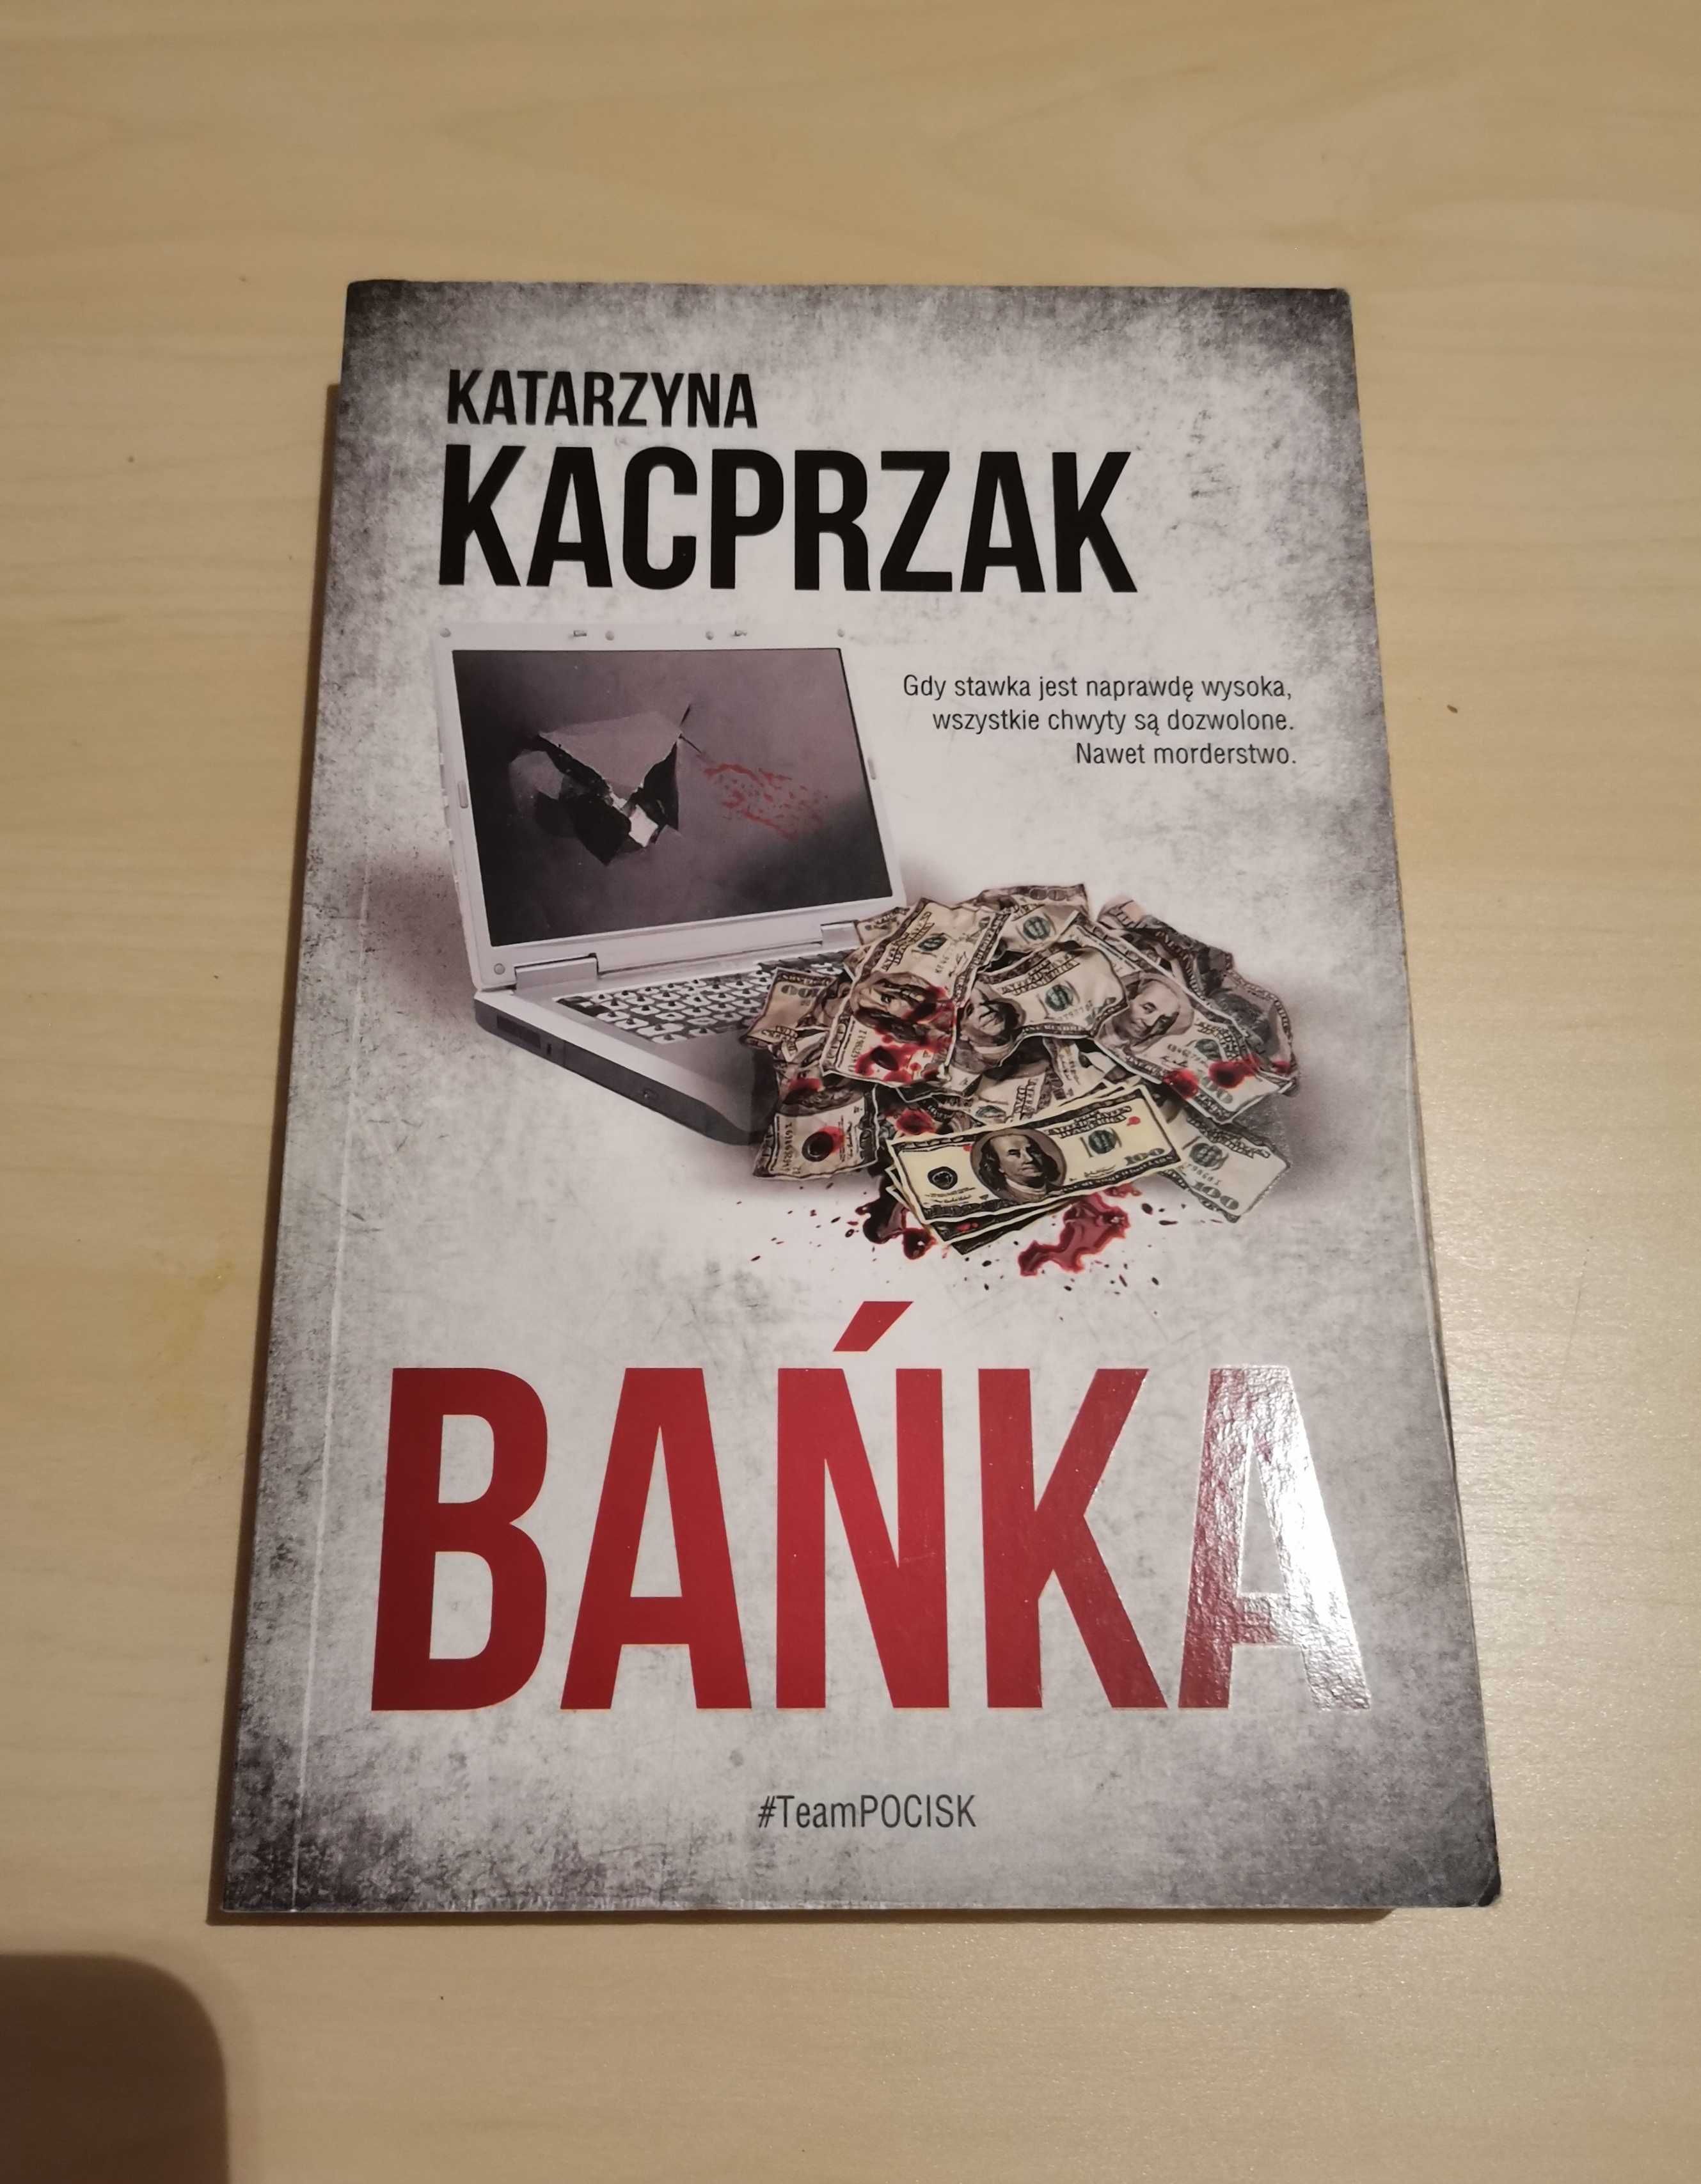 Korpo kryminał, kryminał, "Bańka" Katarzyna Kacprzak